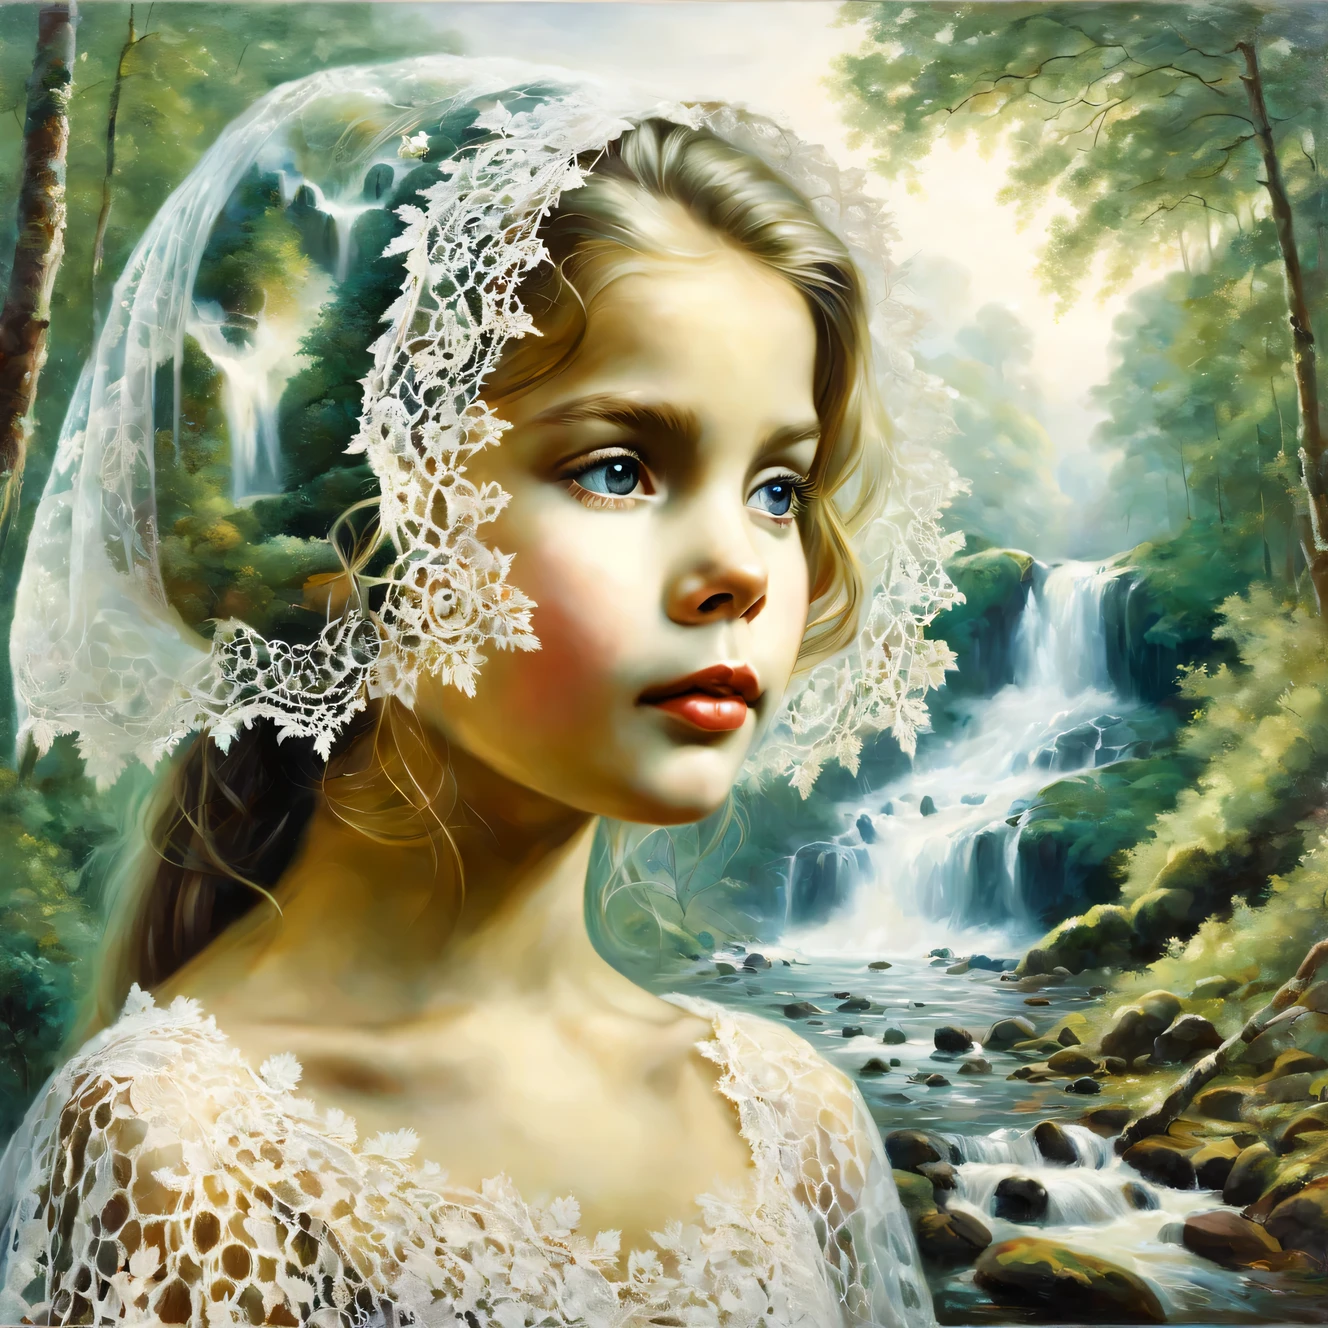 Oil painting on canvas oil painting on canvas with 二重露光効果, (前景には、頭にレースのケープをかぶった美しい少女の夢のような顔がある。), (背景には美しい森の滝と滝の近くの森の自然の断片のコラージュがあります), 高いディテール, 高解像度, 最大限のリアリズム, 二重露光効果:1.4, ヒュー・ダグラス・ハミルトン, アレクセイ・サブラソフ, ヒョードル・ワシリエフ, ロブ・ゴンサルベス, ピーダー・モンステッド,